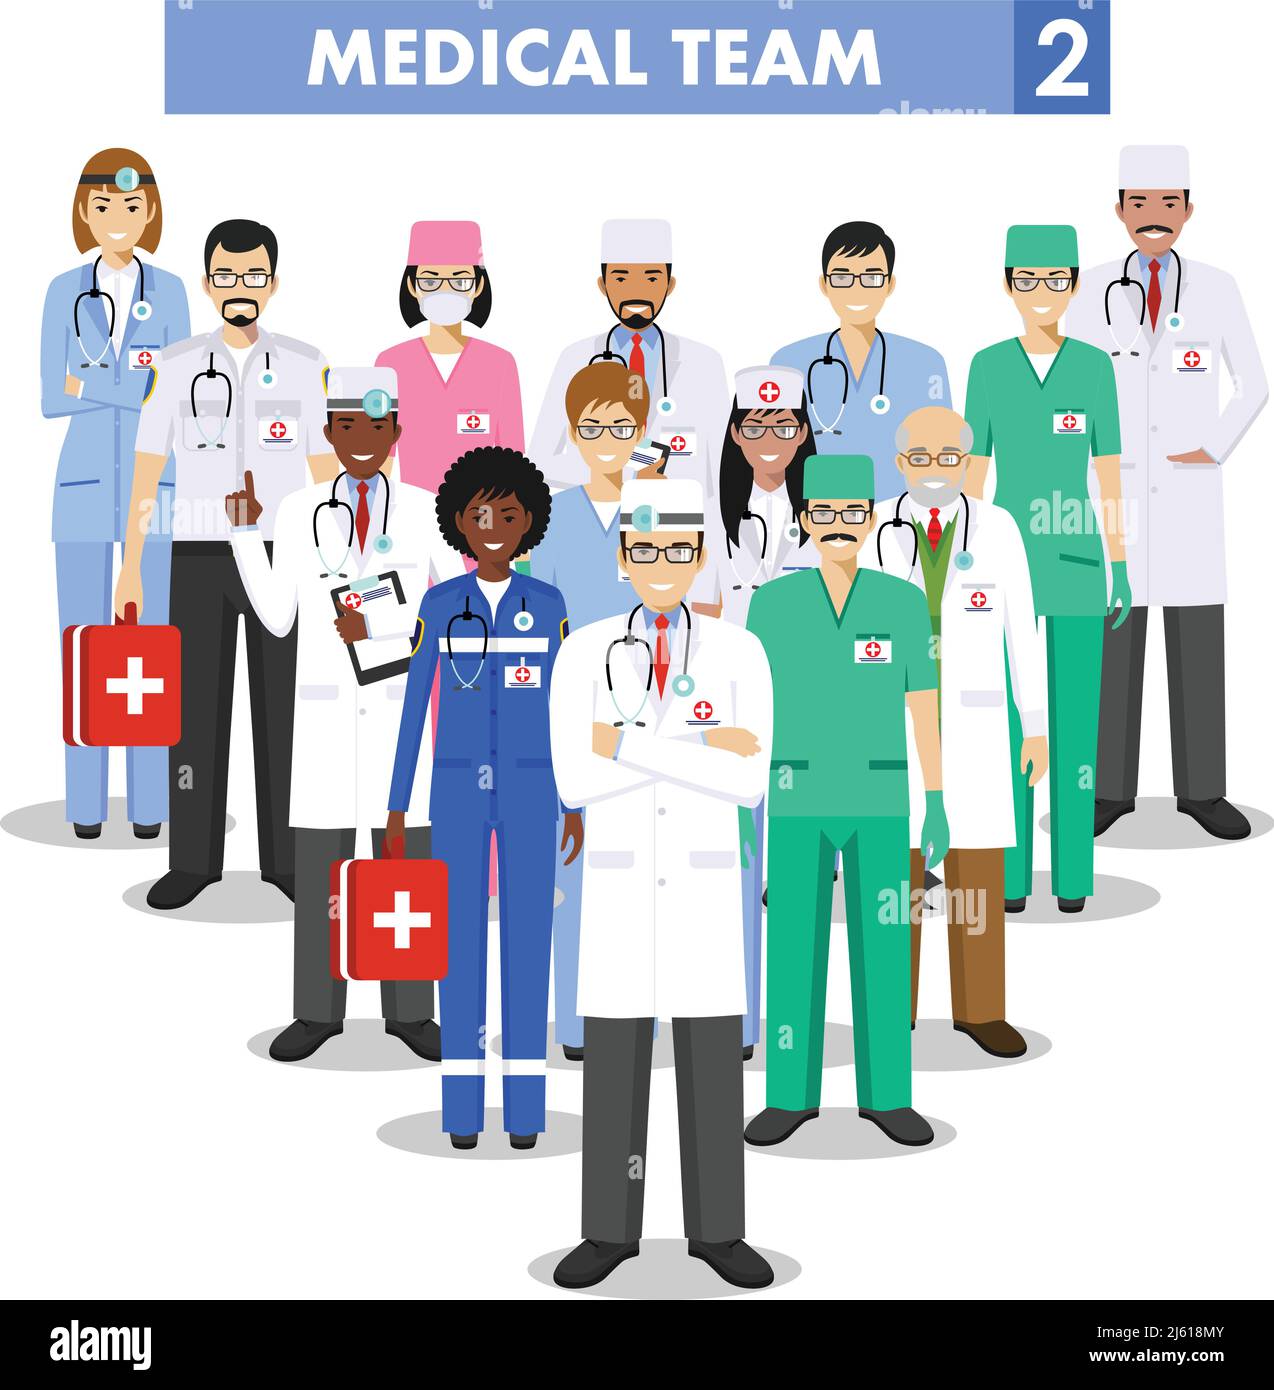 Detaillierte Darstellung von medizinischen Personen in flacher Ausführung auf weißem Hintergrund. Stock Vektor